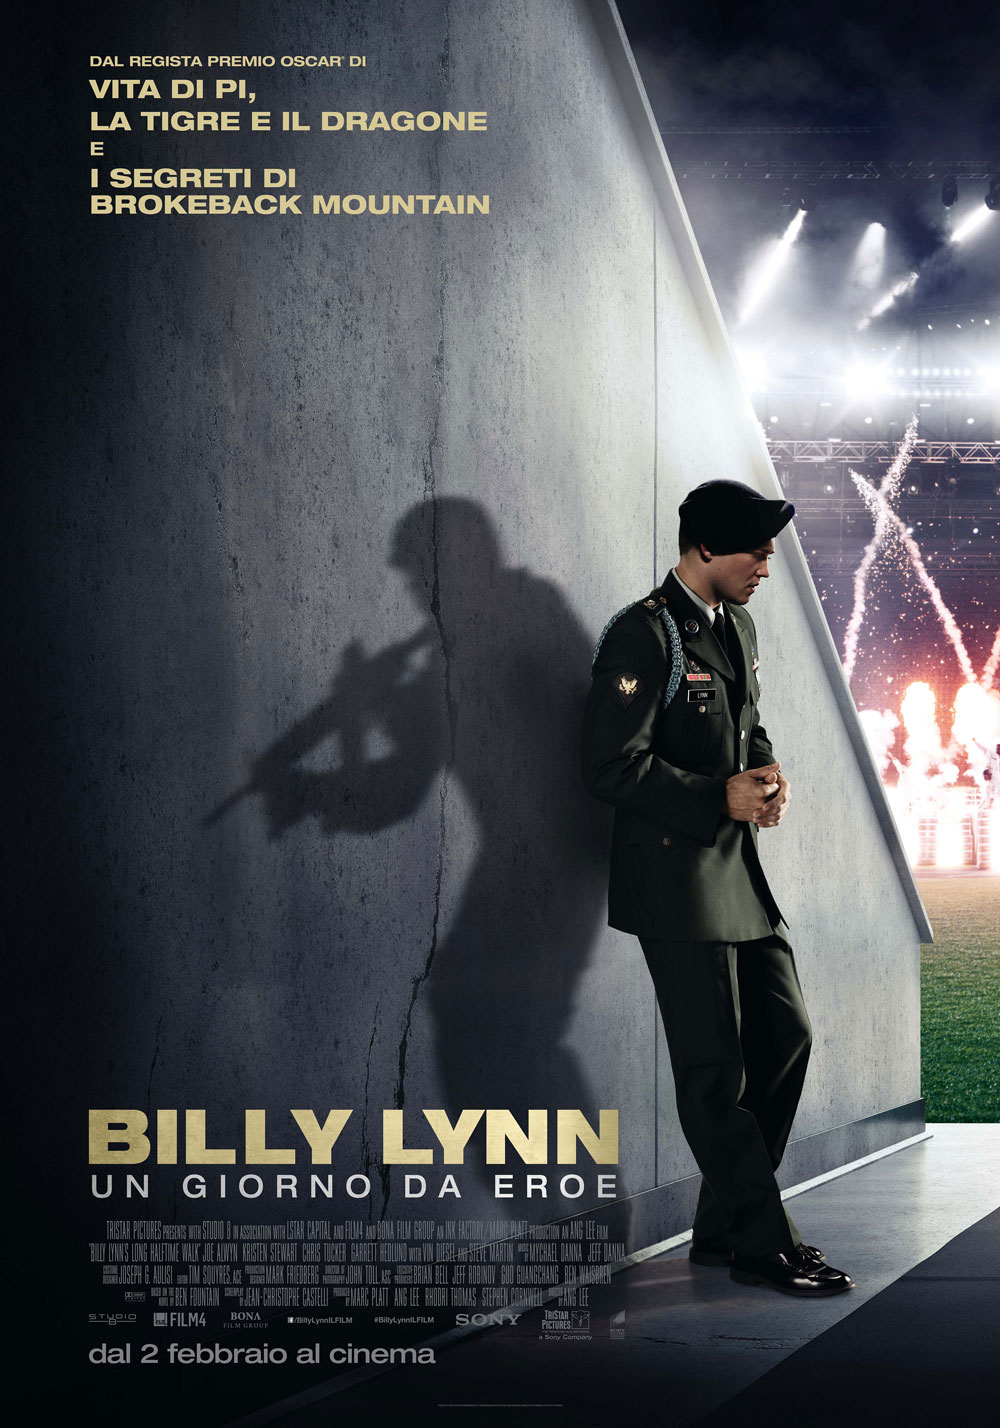  Dall'articolo: Billy Lynn - Un giorno da eroe, il poster.